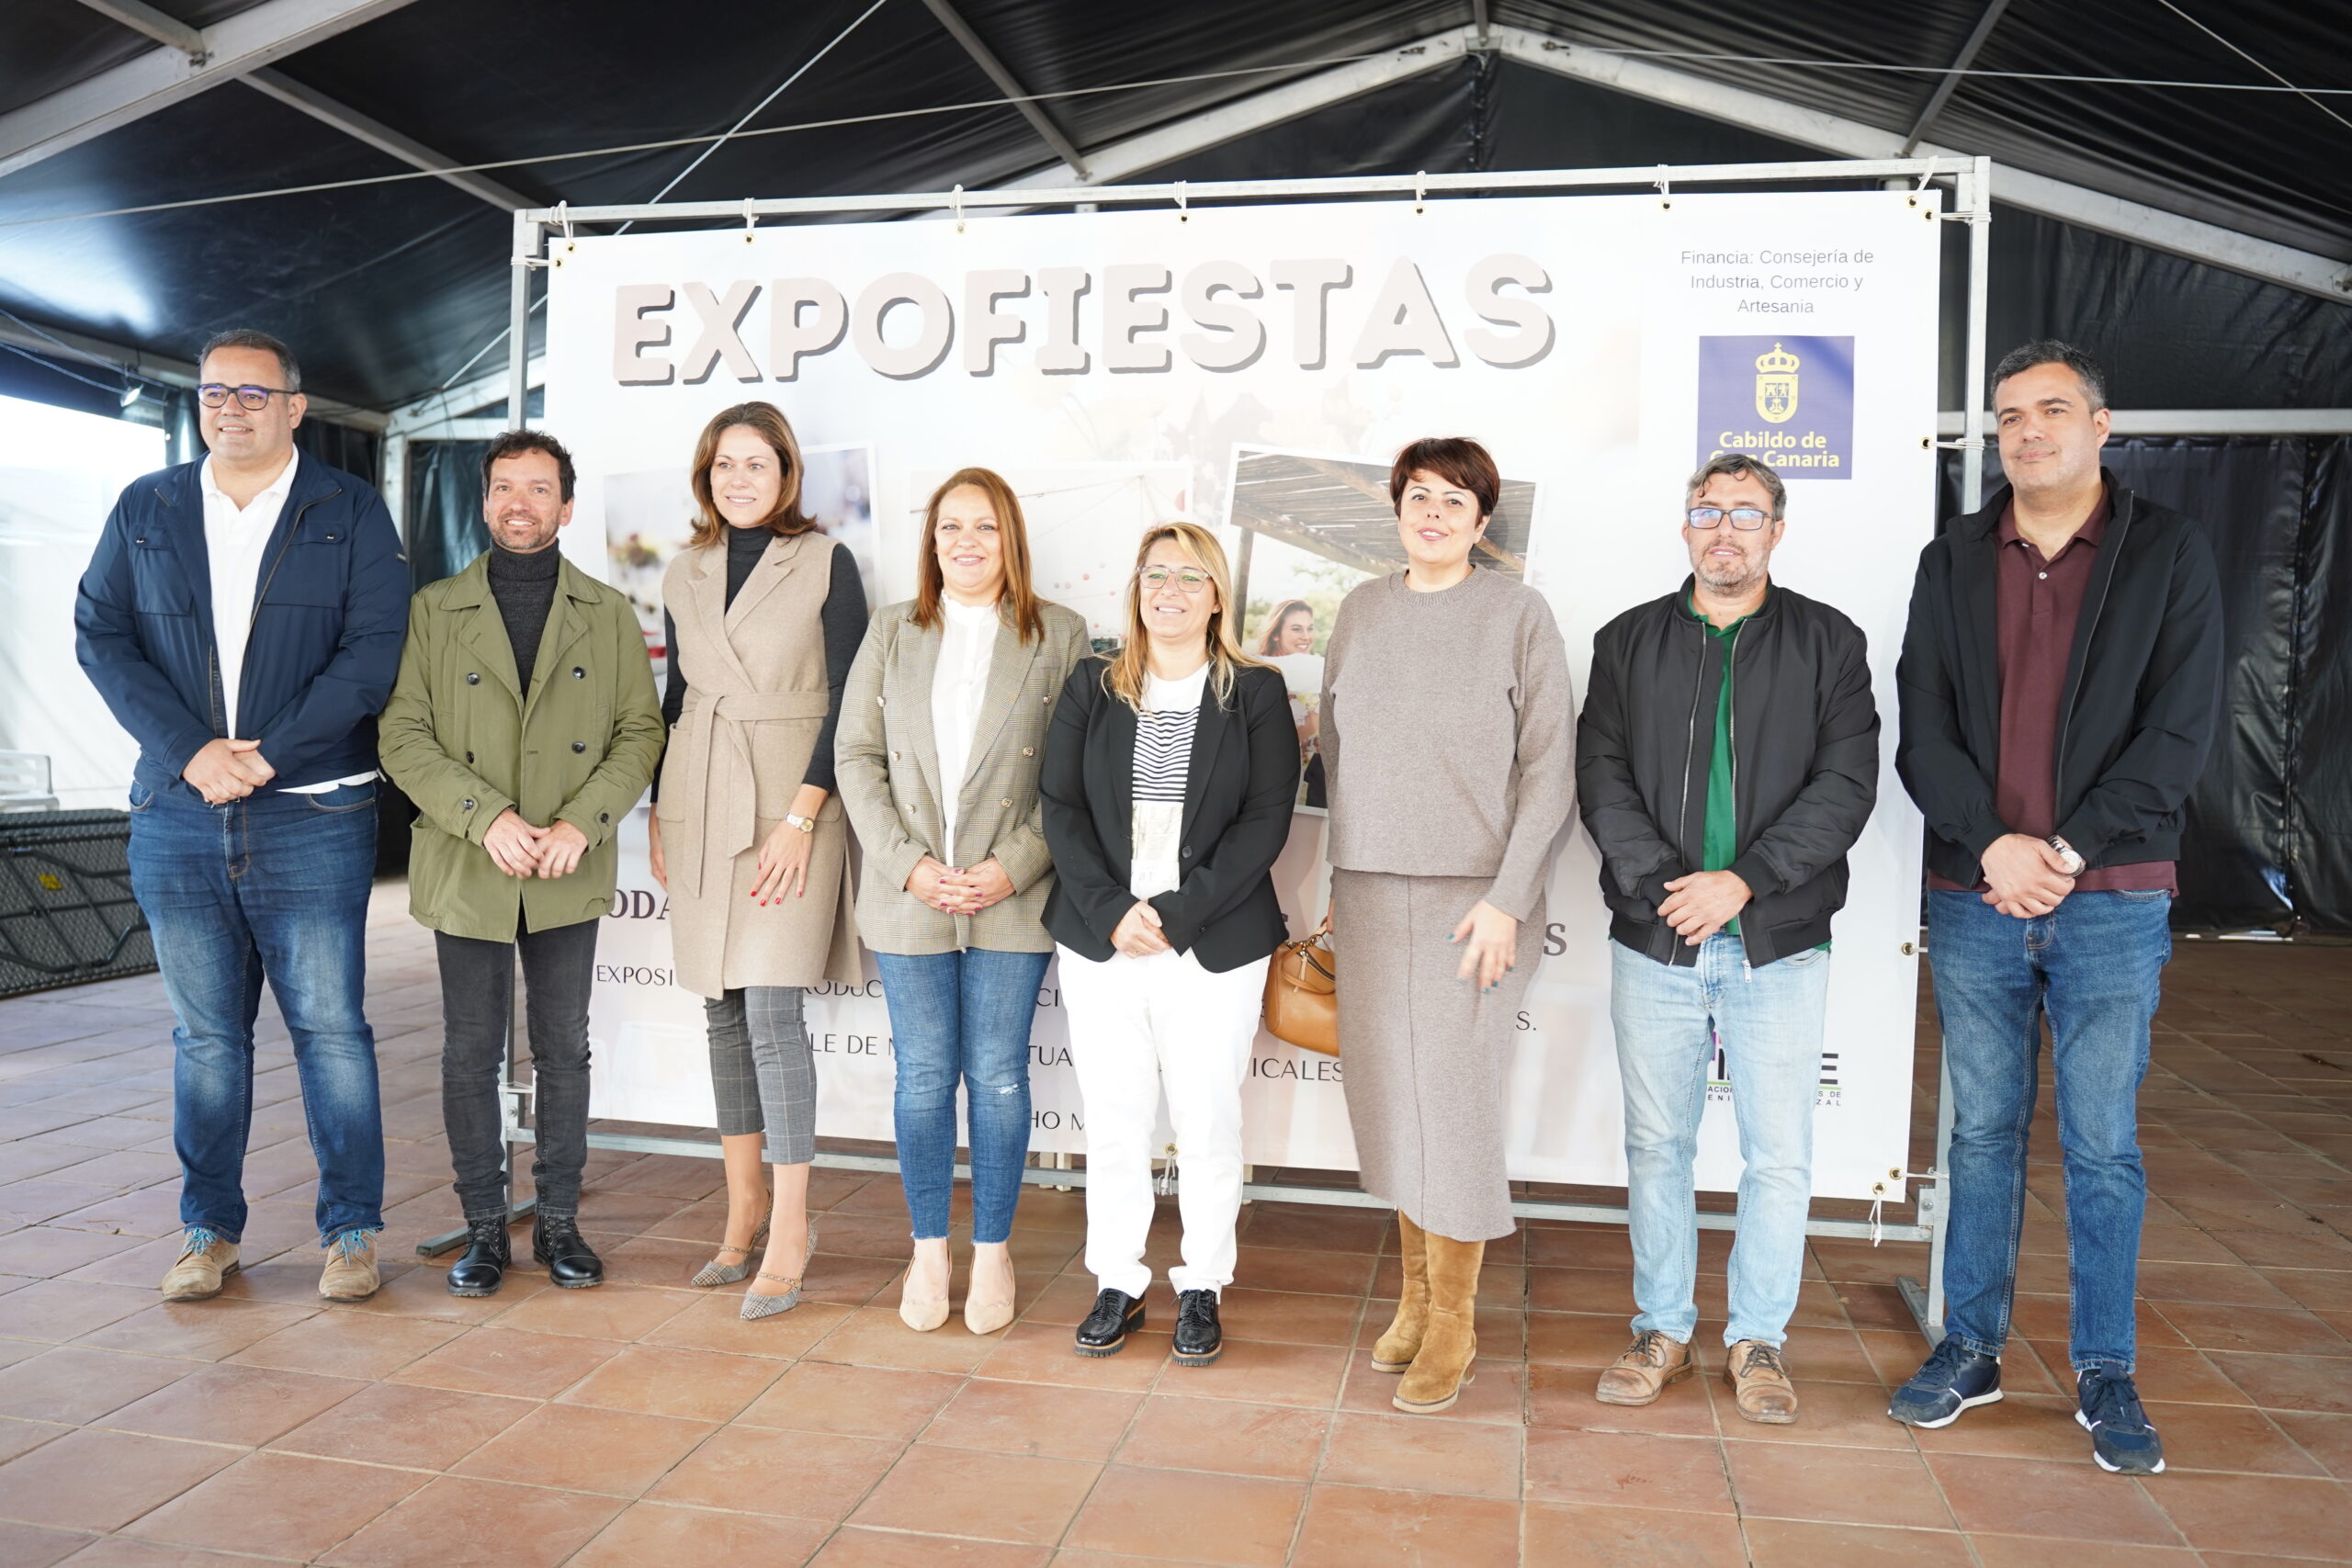 Expo Fiestas reúne en Ingenio a 28 empresas del sector de la celebración de eventos